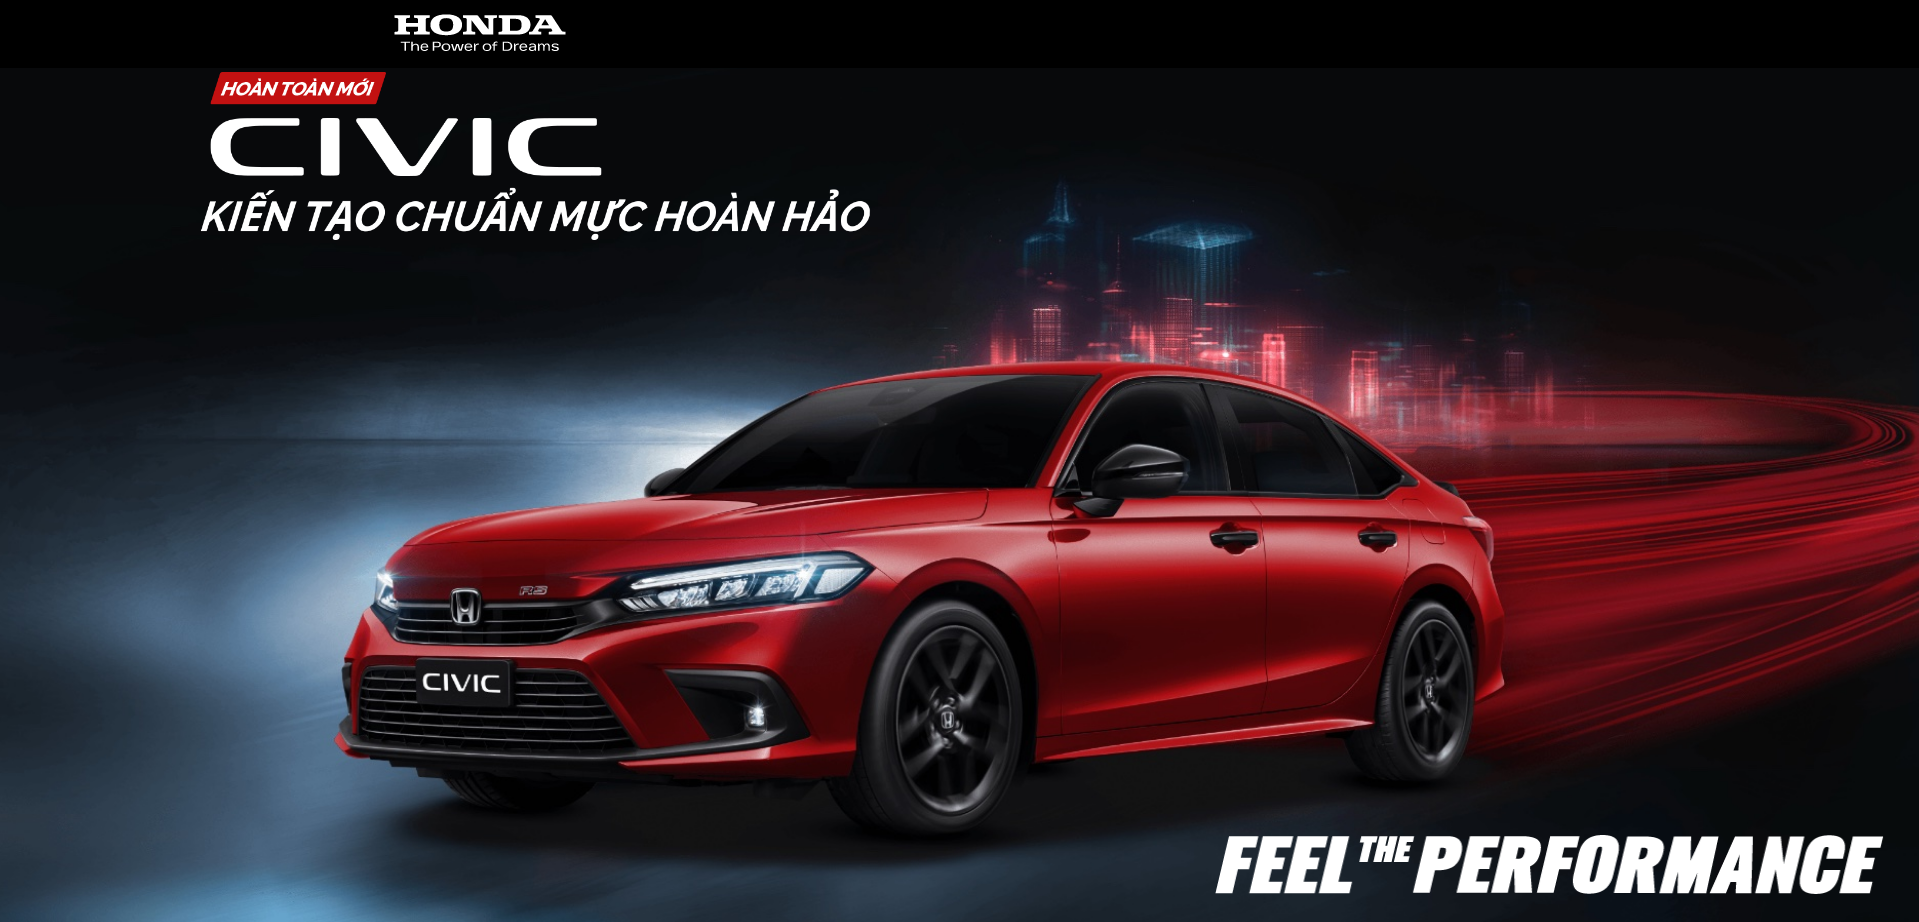 Honda Việt Nam giới thiệu Honda Civic thế hệ 11 hoàn toàn mới – Kiến tạo chuẩn mực hoàn hảo